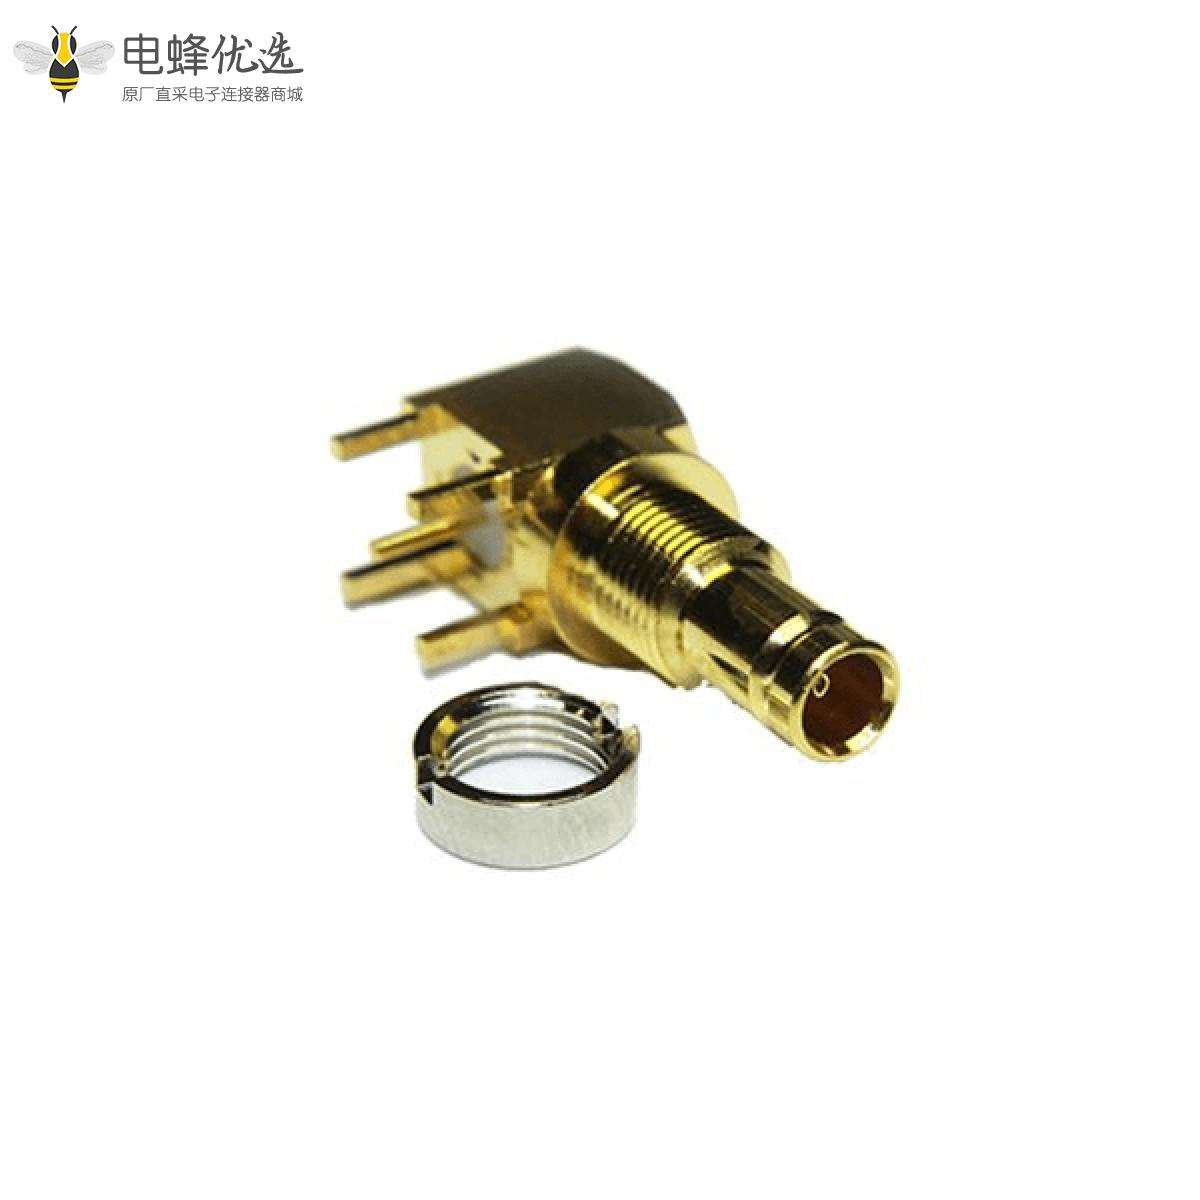 1.0 / 2.3连接器直角75Ω插座焊接端接用于PCB安装的微型微型隔板配件